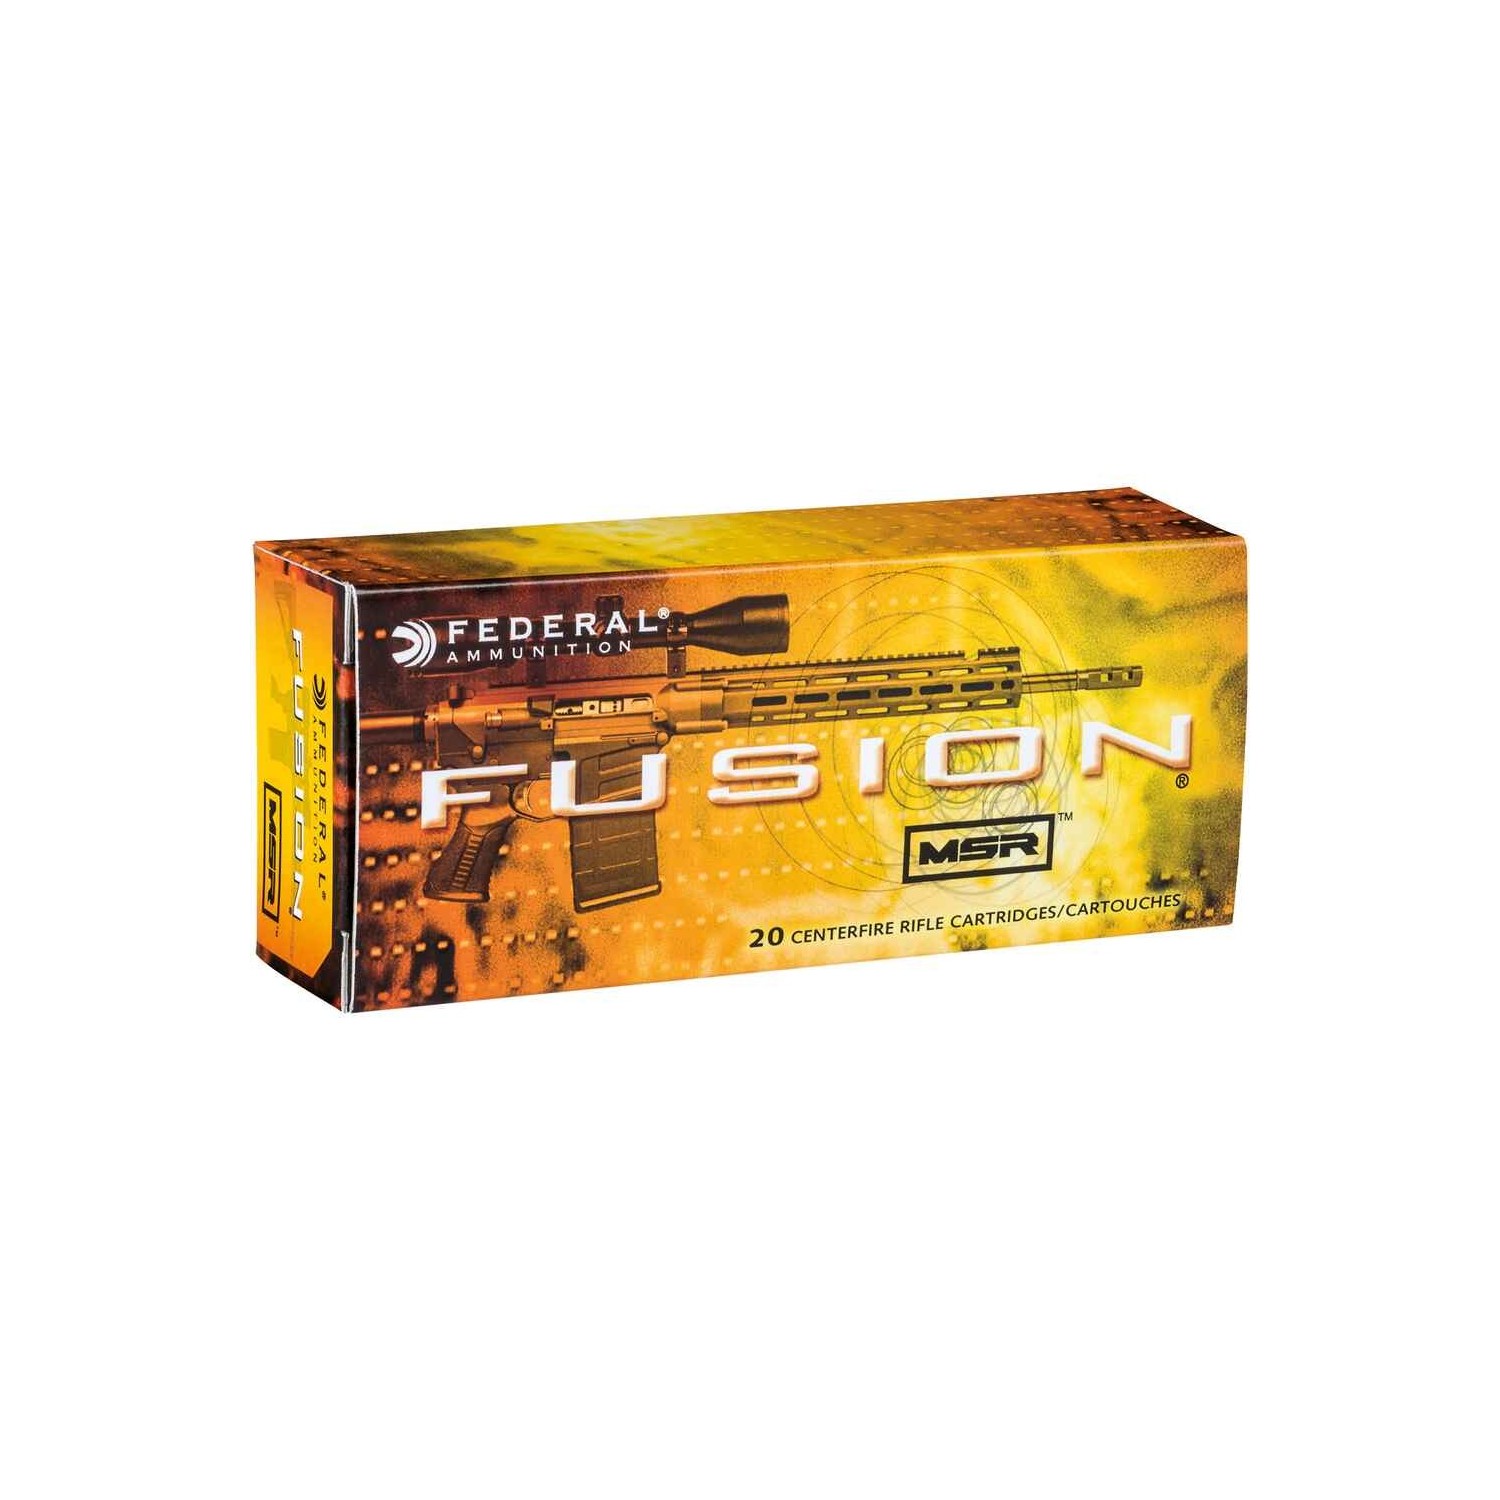 .308 Win. Fusion MSR 150 grs. Federal Ammunition